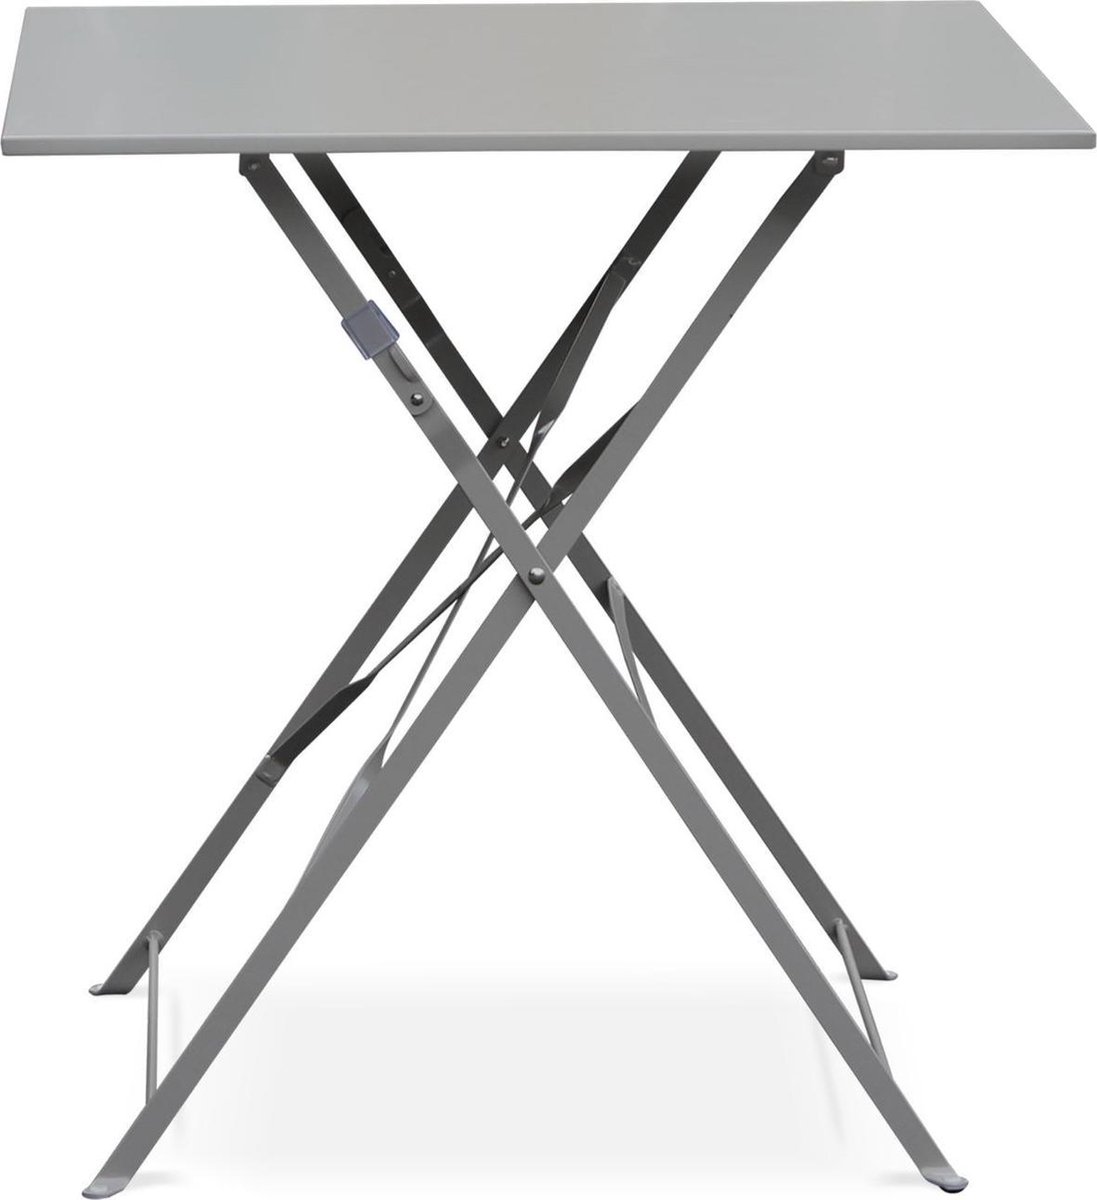 Emilia - Tuintafel bistrot opvouwbaar - Vierkante tafel 70x70cm van staal met thermolak - Grijs Taupe